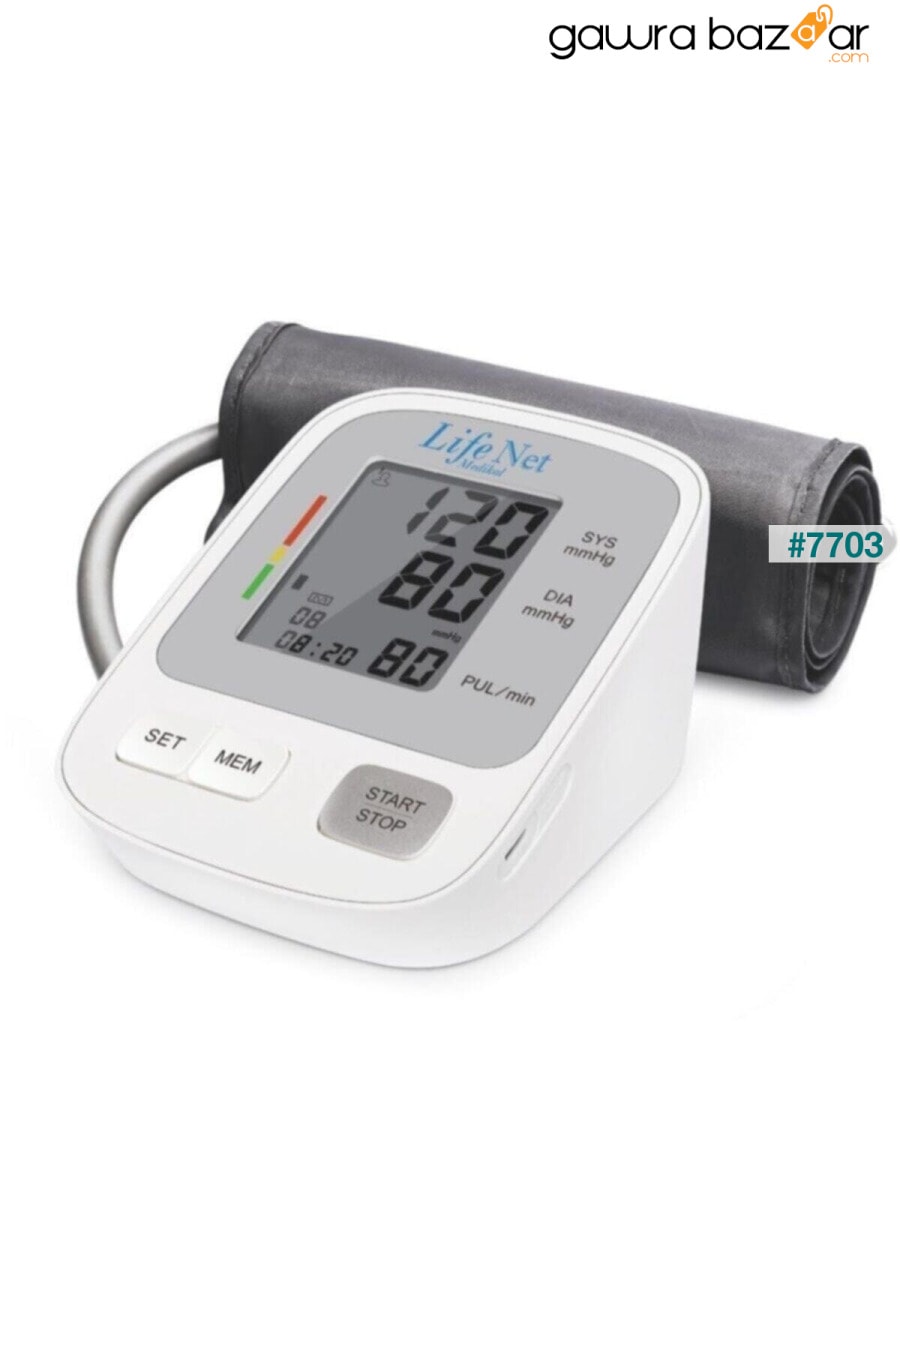 جهاز مراقبة ضغط الدم ، جهاز مراقبة ضغط الدم في أعلى الذراع ، جهاز مراقبة معدل ضربات القلب ، Wbp-108 مع مدخل USB. Life Net Medikal 0